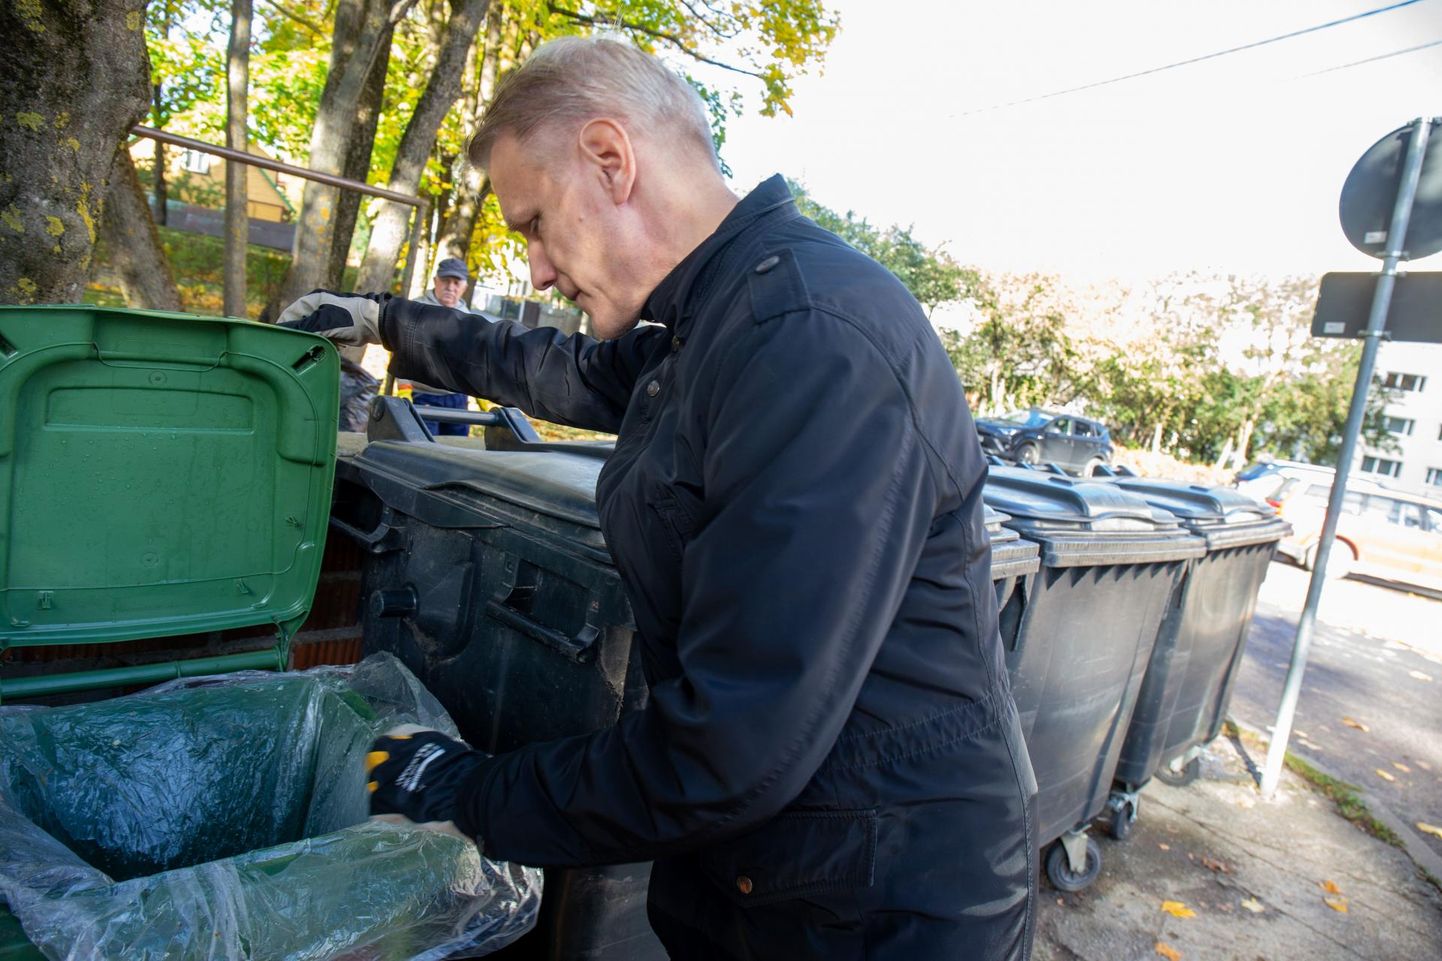 Aktsiaseltsi Keskkonnateenused arendusjuhile Kalle Grentsile vaatasid eile Ropka 15a juures biojäätmete kastist vastu pelgalt suitsukoni ja kilekott. Kuid toidujäätmeid leidus kõrvalolevates segaolmejäätmete konteinerites.